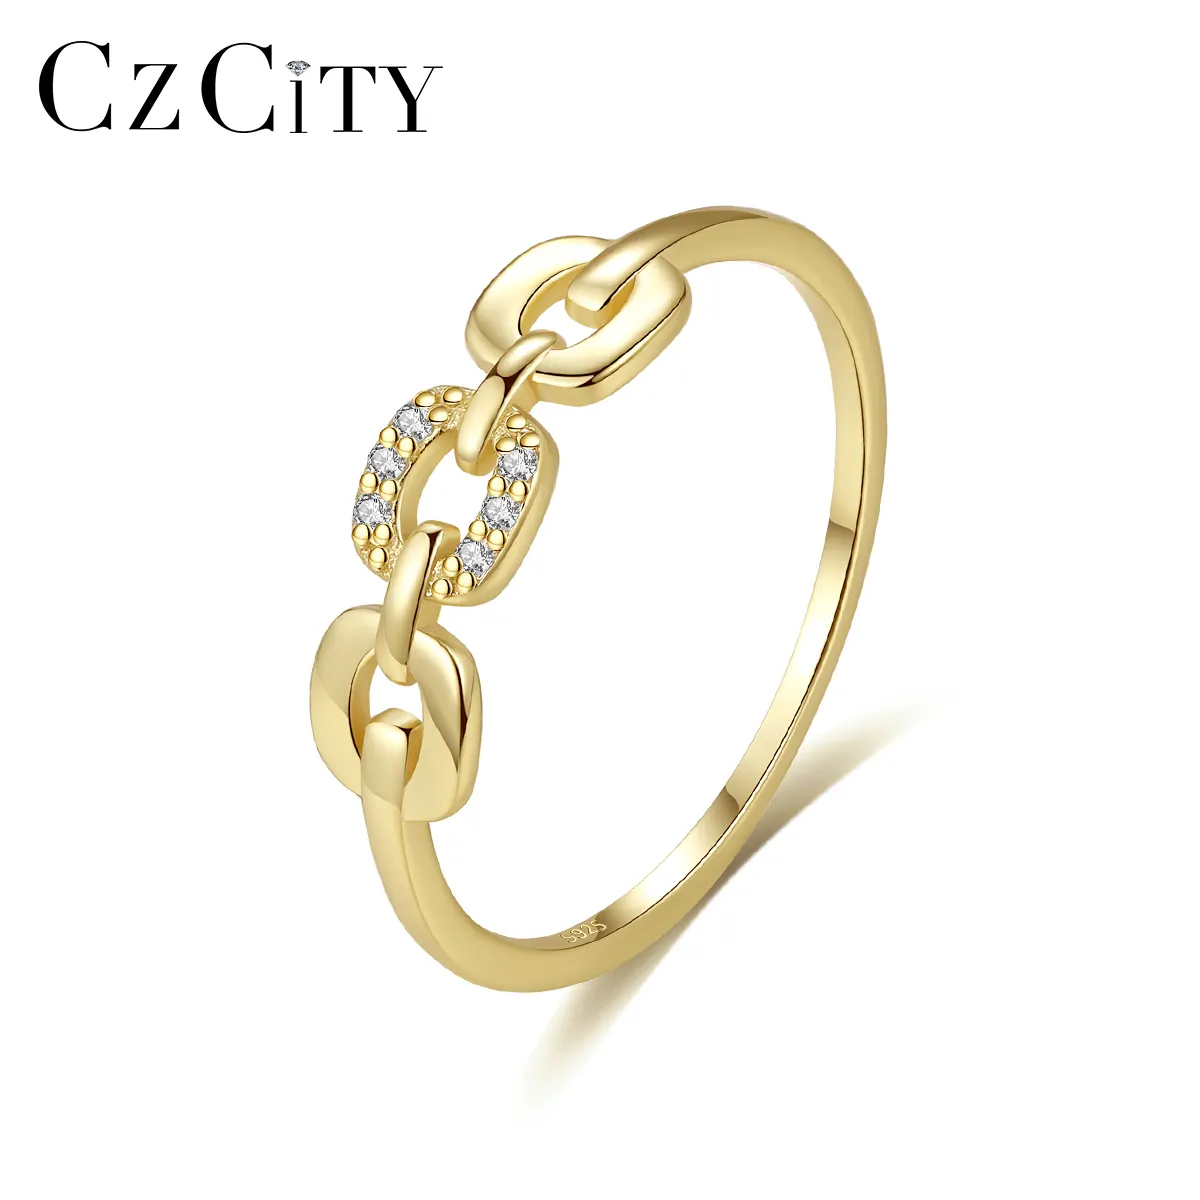 CZCITY Metal moda takı bayan Cz 925 kaplama mikro zirkon yüksek kalite gümüş tasarım kız altın yüzük